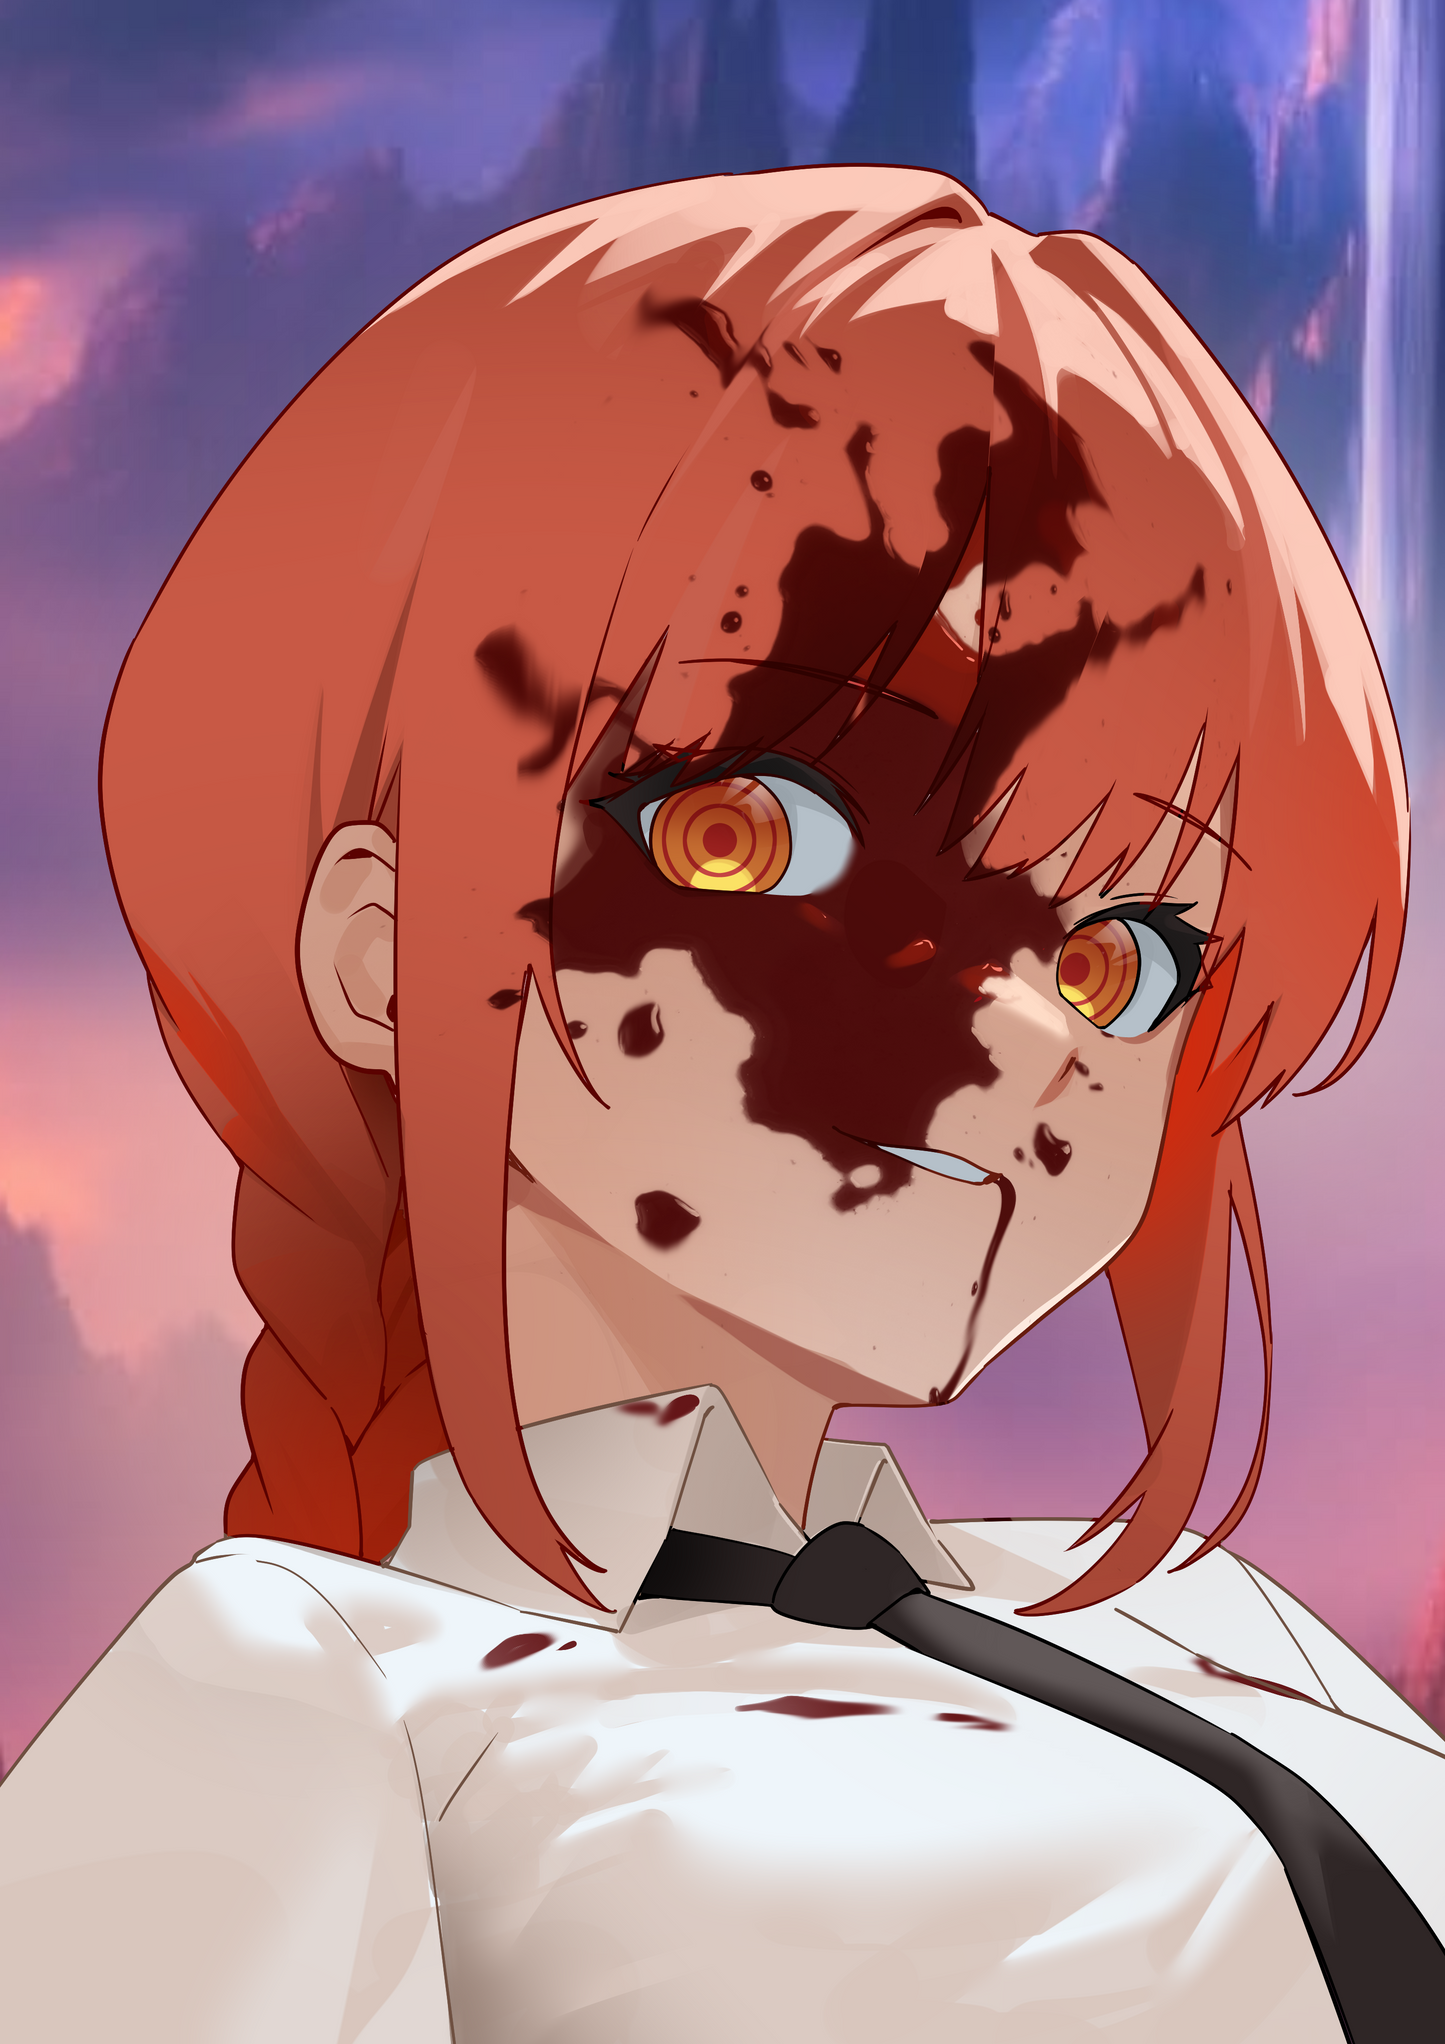 Makima-Inspired Anime Headshot Illustrations